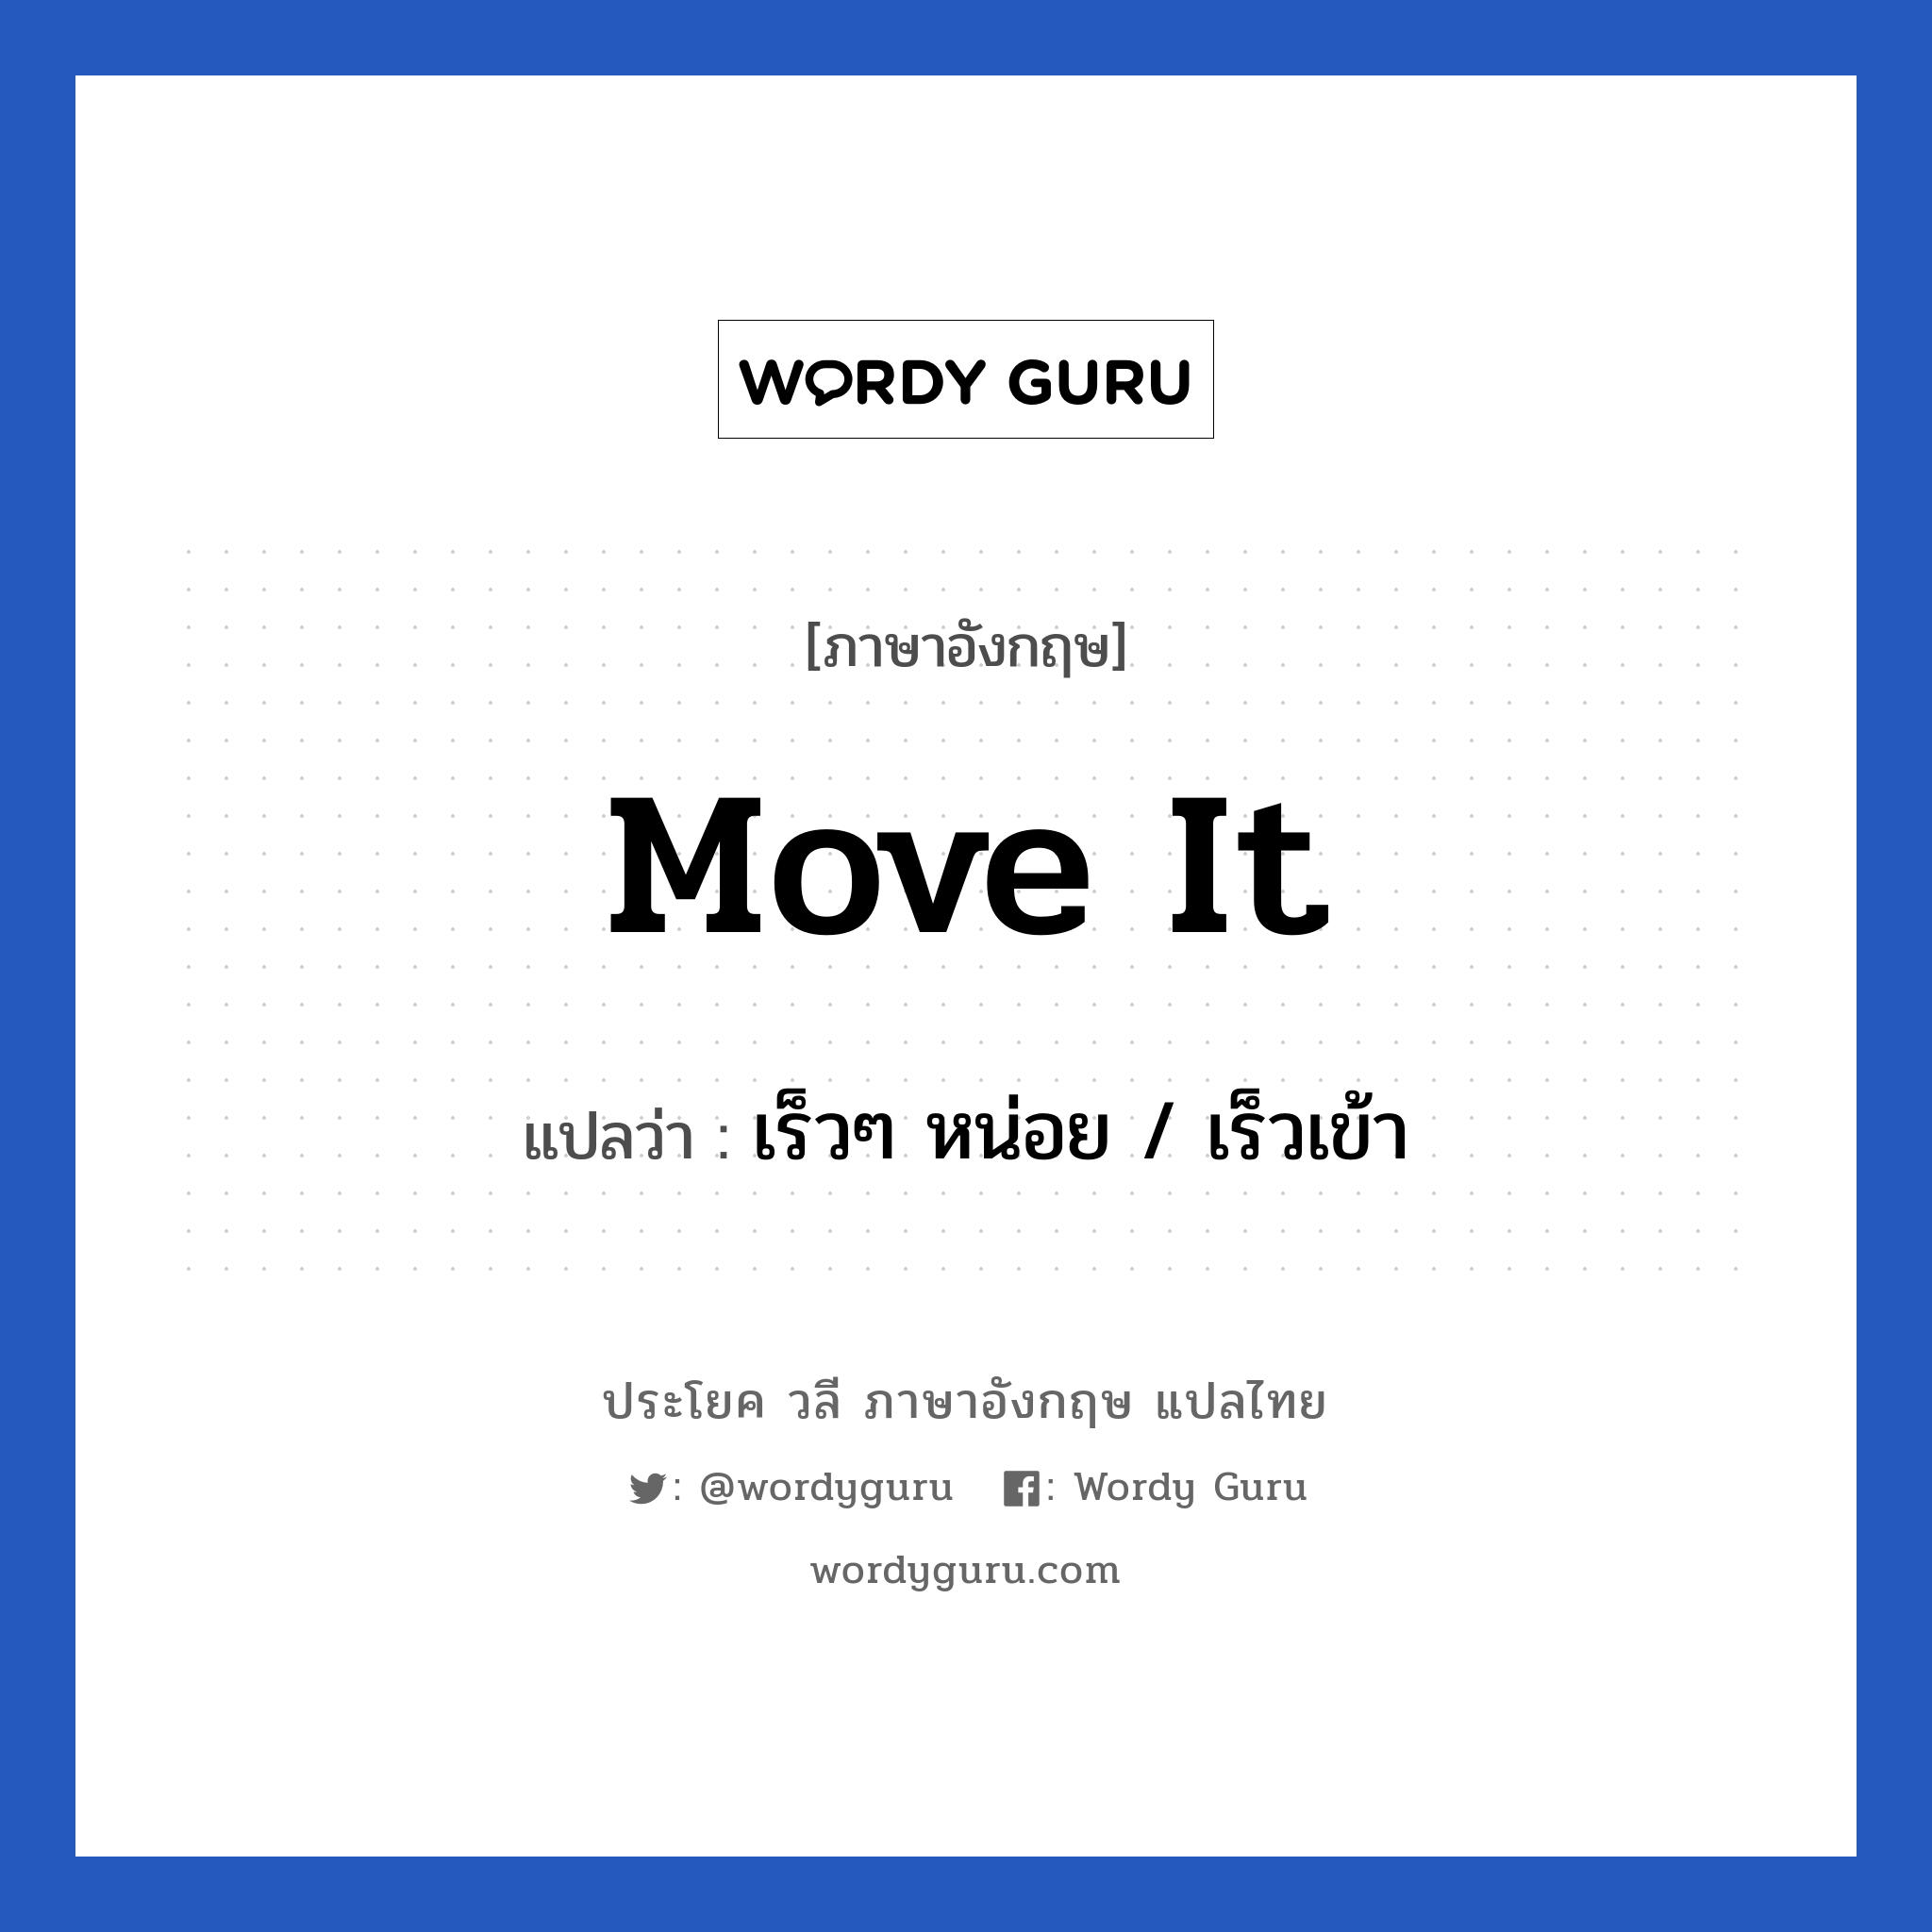 เร็วๆ หน่อย / เร็วเข้า ภาษาอังกฤษ?, วลีภาษาอังกฤษ เร็วๆ หน่อย / เร็วเข้า แปลว่า Move it